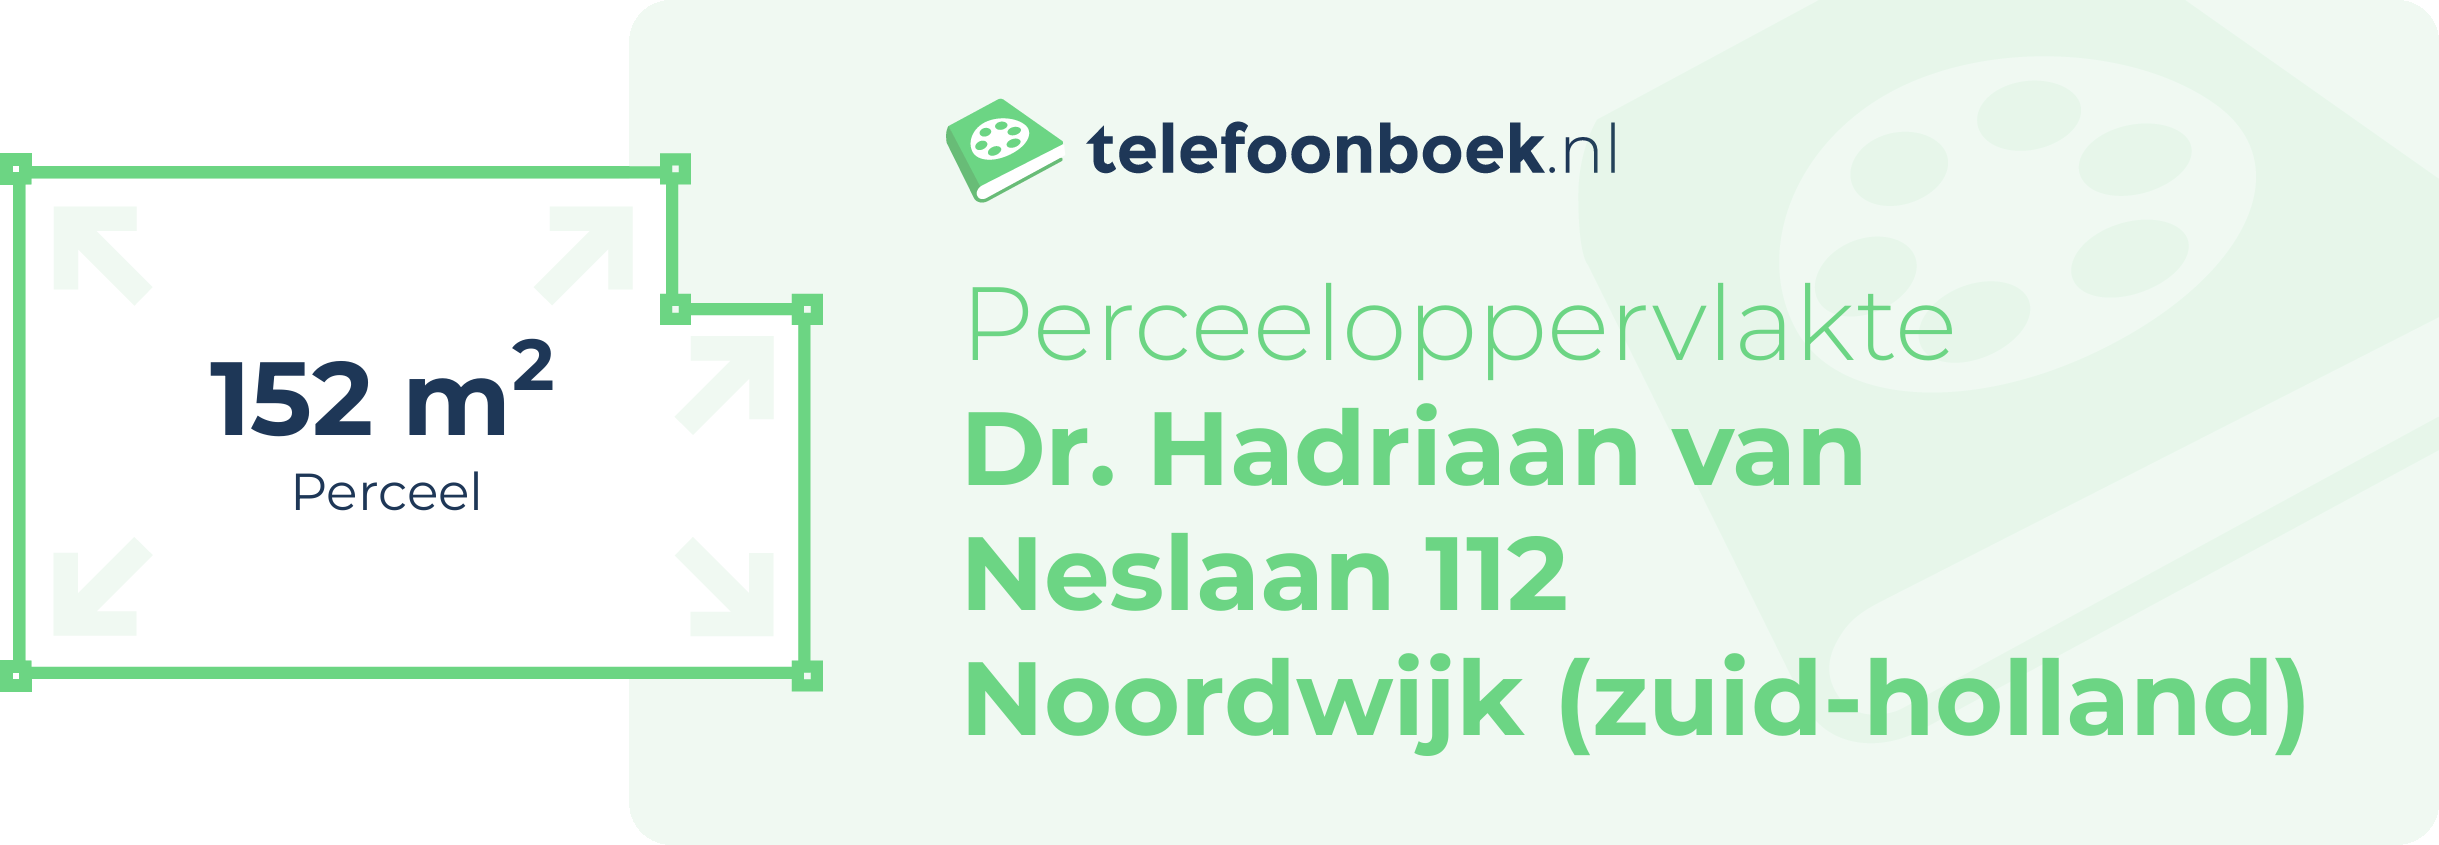 Perceeloppervlakte Dr. Hadriaan Van Neslaan 112 Noordwijk (Zuid-Holland)